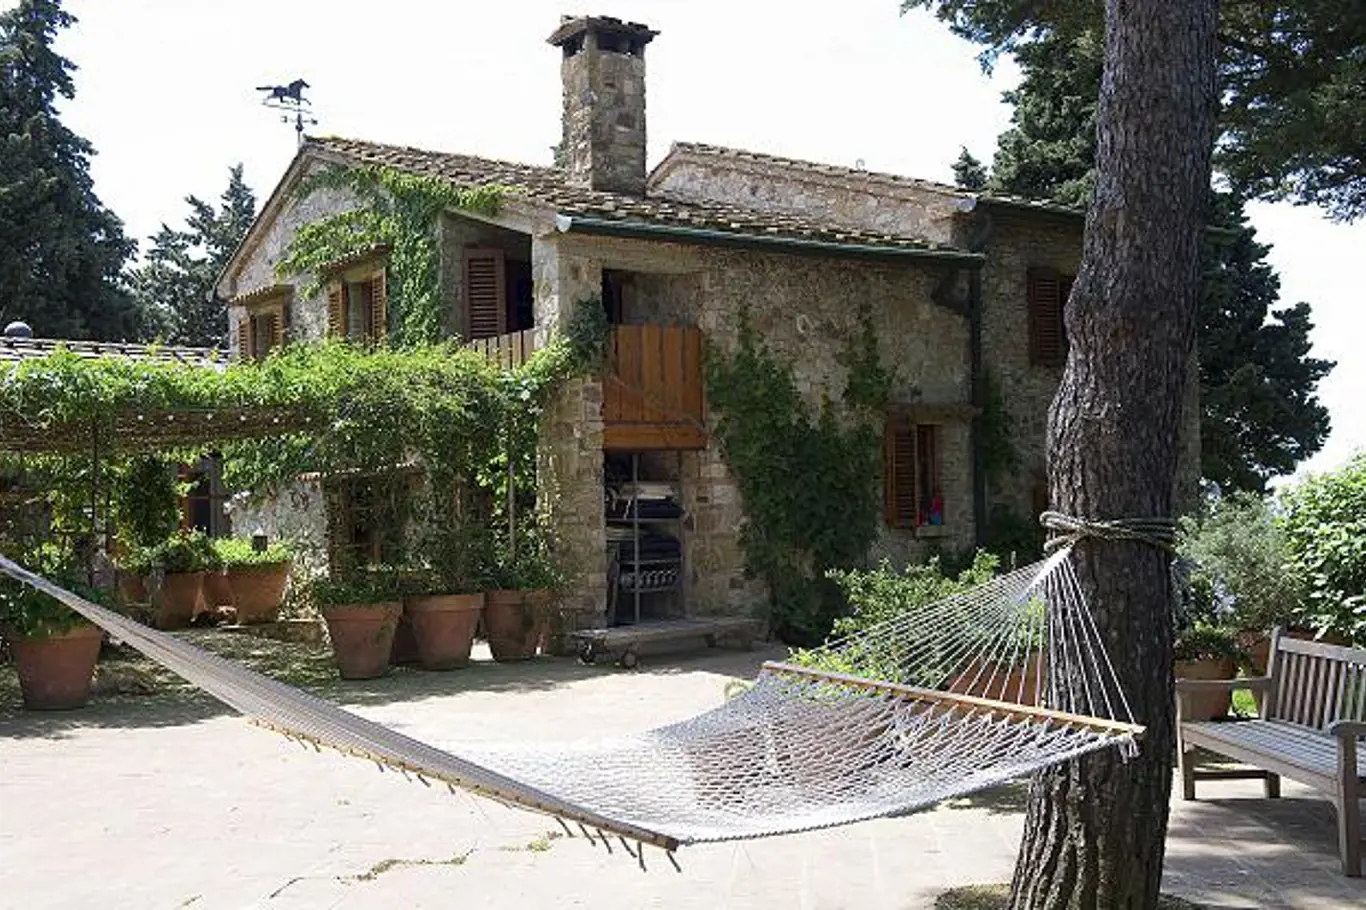 Tradiční kamenný dům středomořského typu s dřevěnými okenicemi a malou dřevěnou lodžií nad otevřeným vchodem.